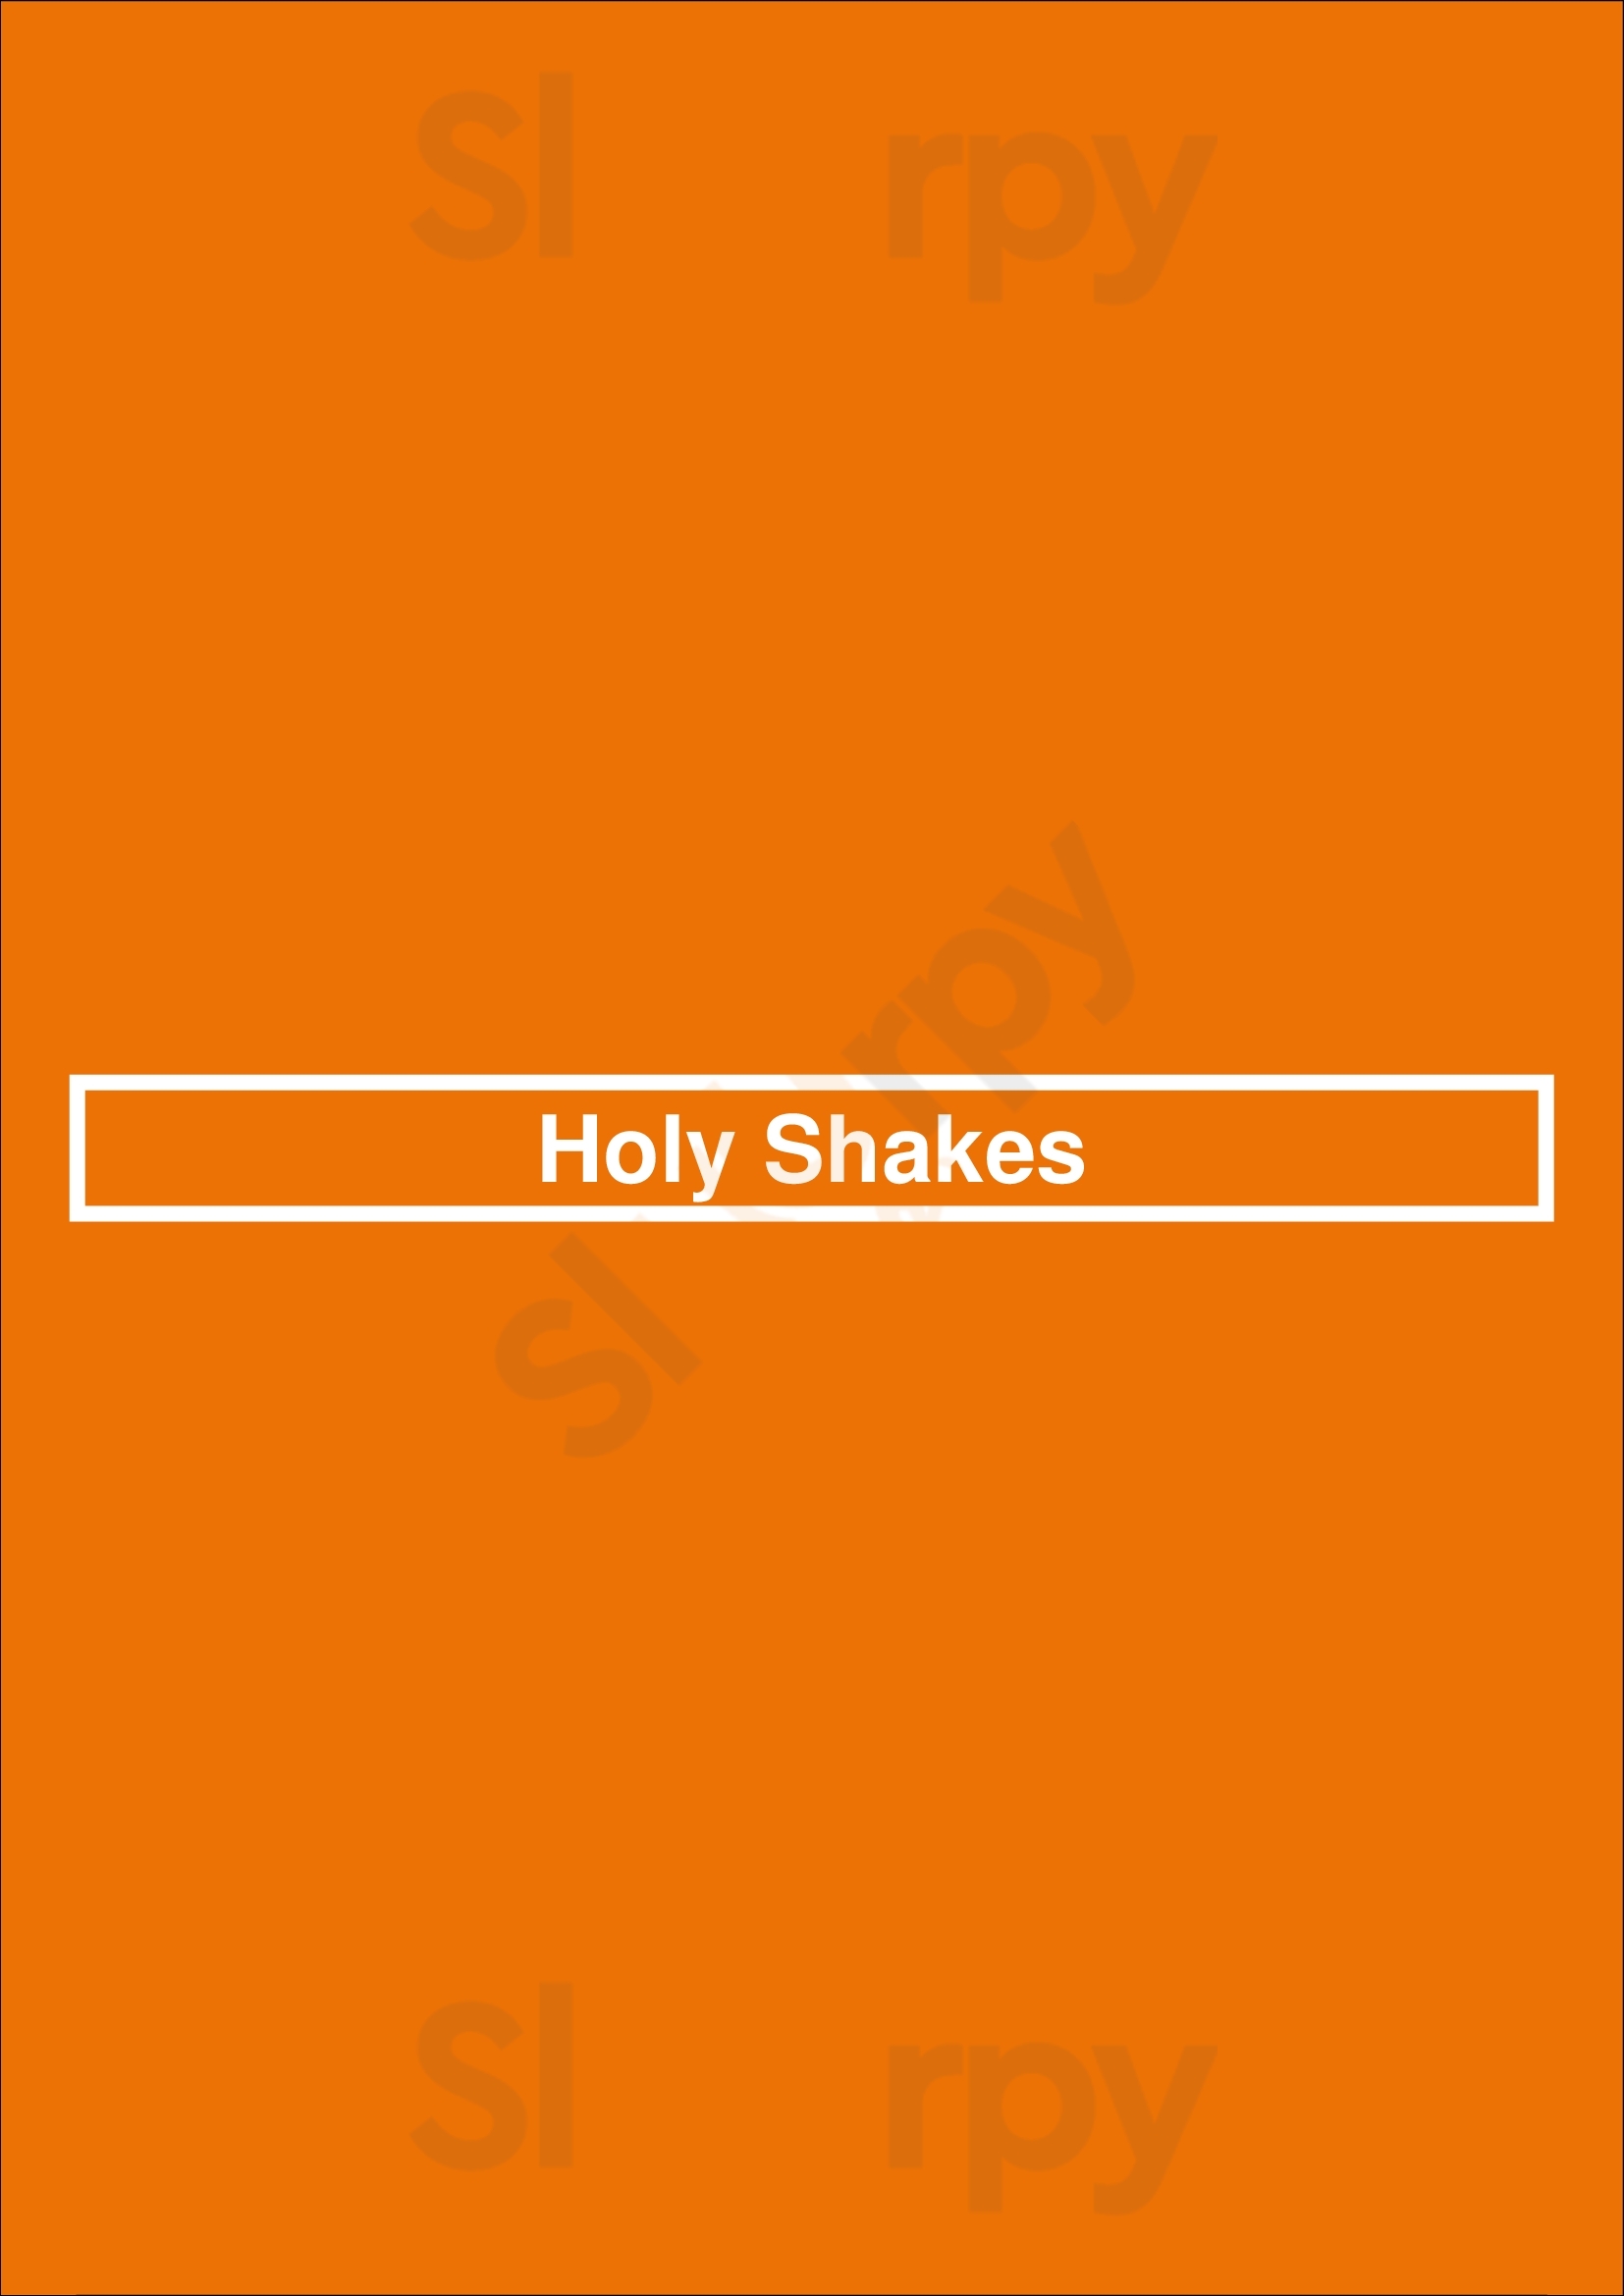 Holy Shakes Brampton Menu - 1